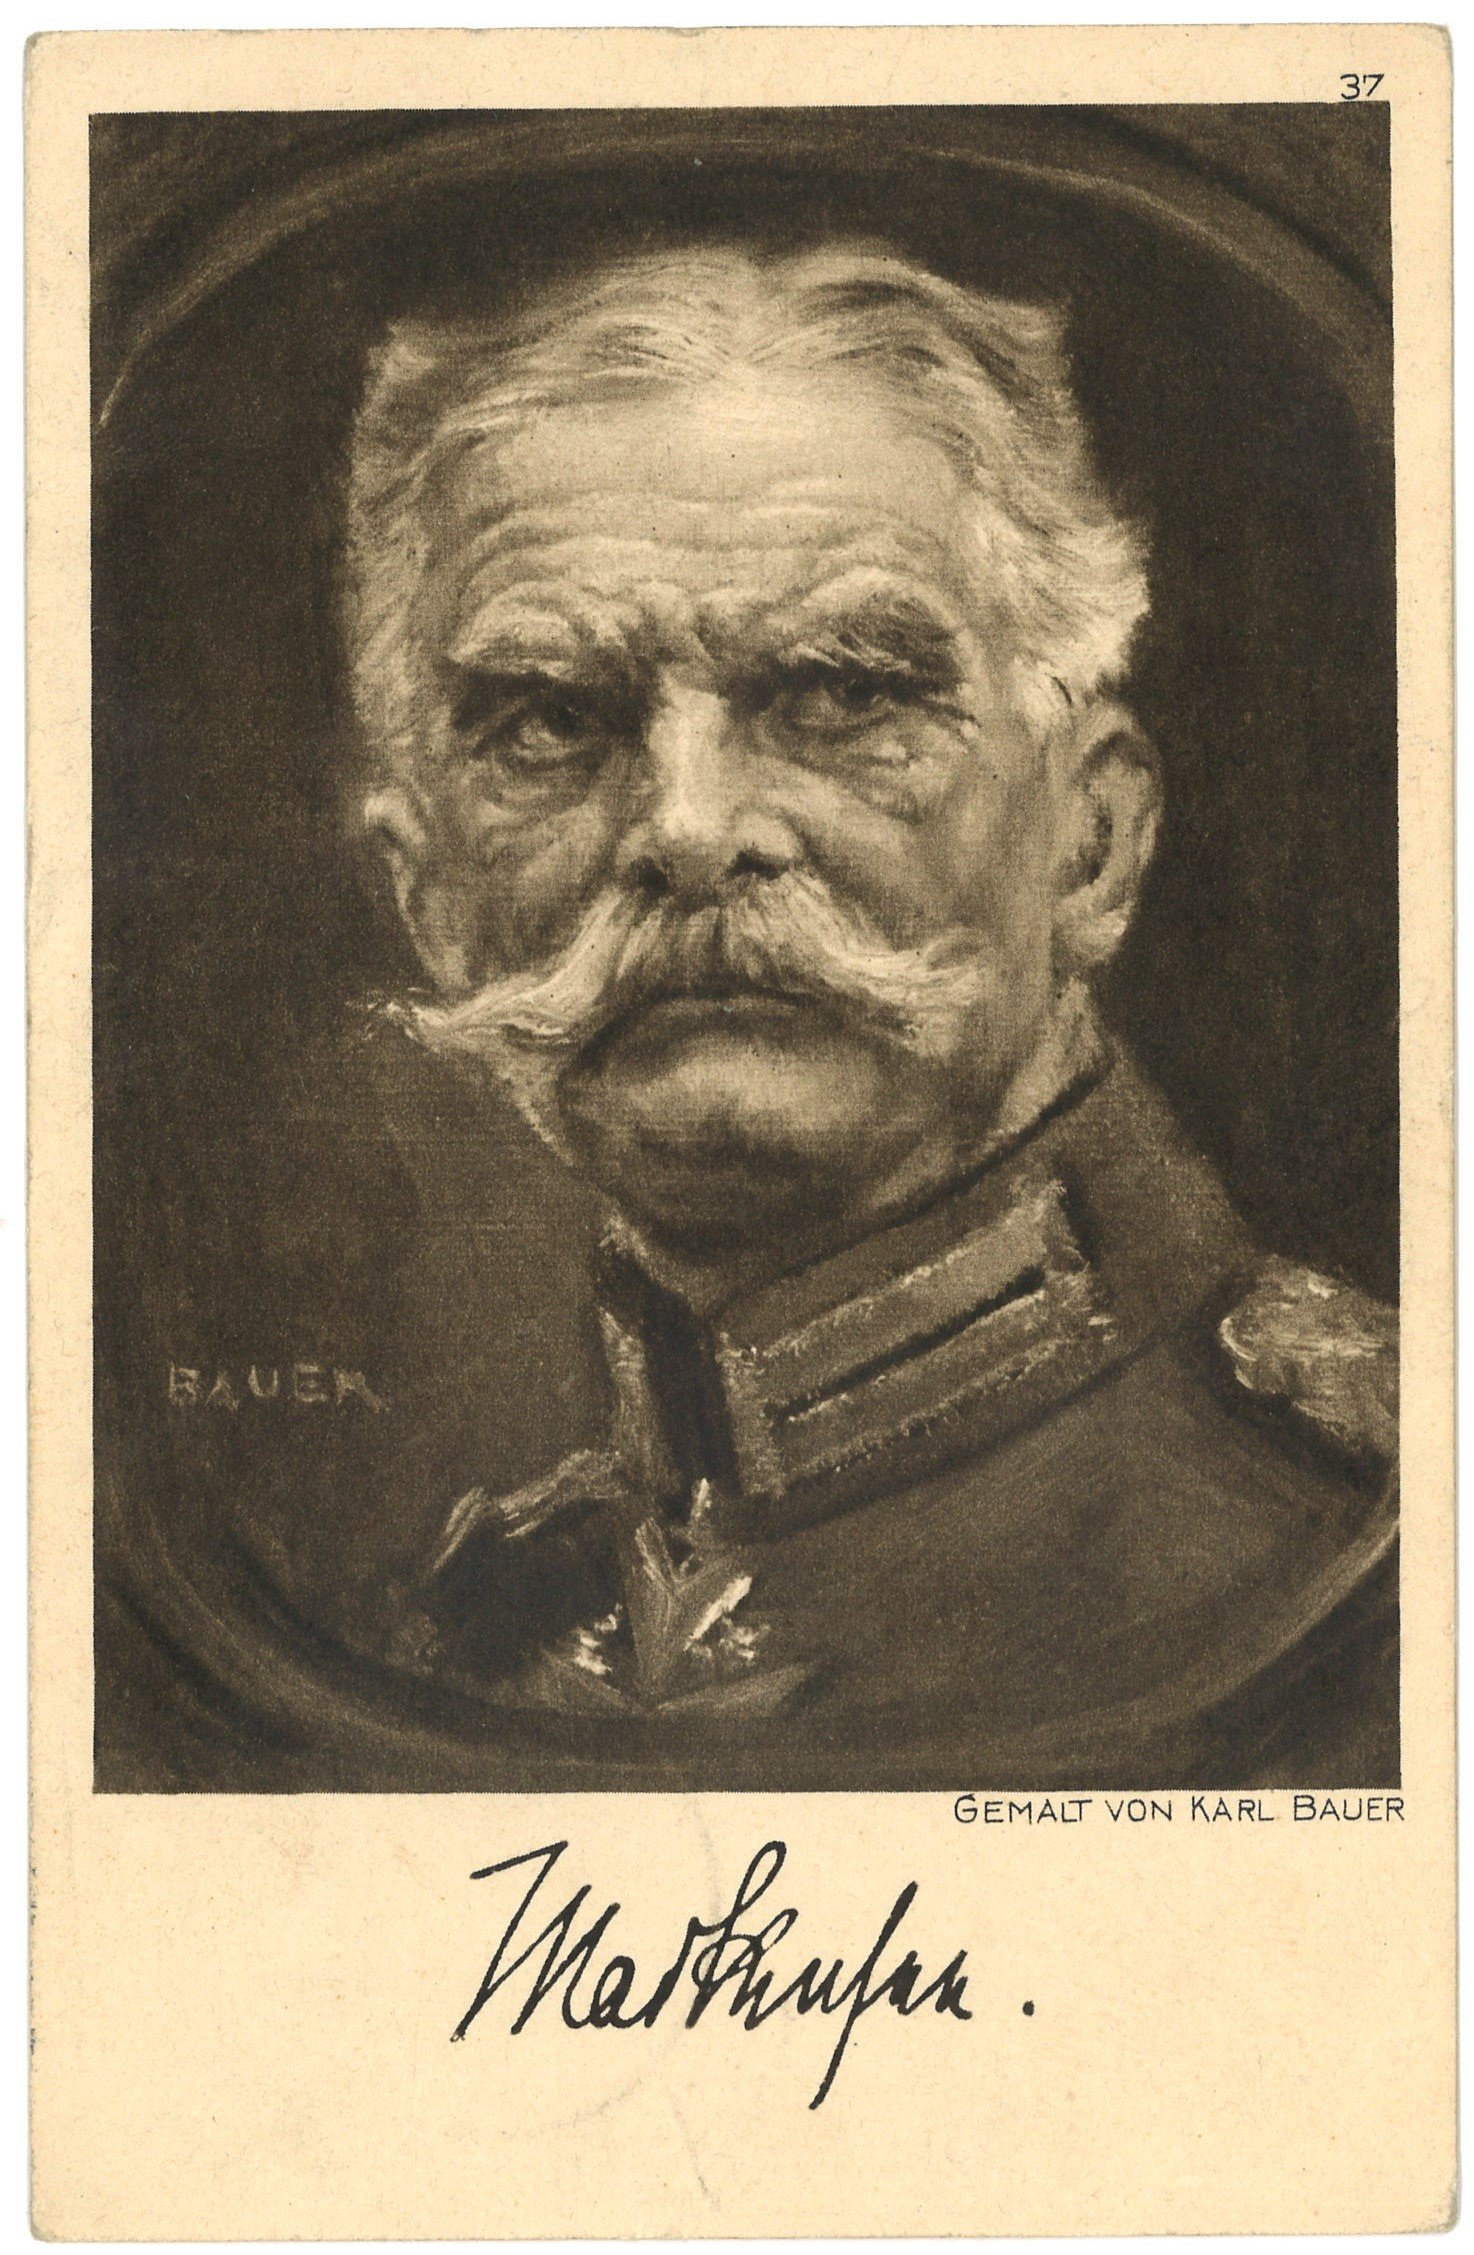 Mackensen, August von (1849–1945), preuß. Generalfeldmarschall (Gemälde von Karl Bauer) (Landesgeschichtliche Vereinigung für die Mark Brandenburg e.V. CC BY)